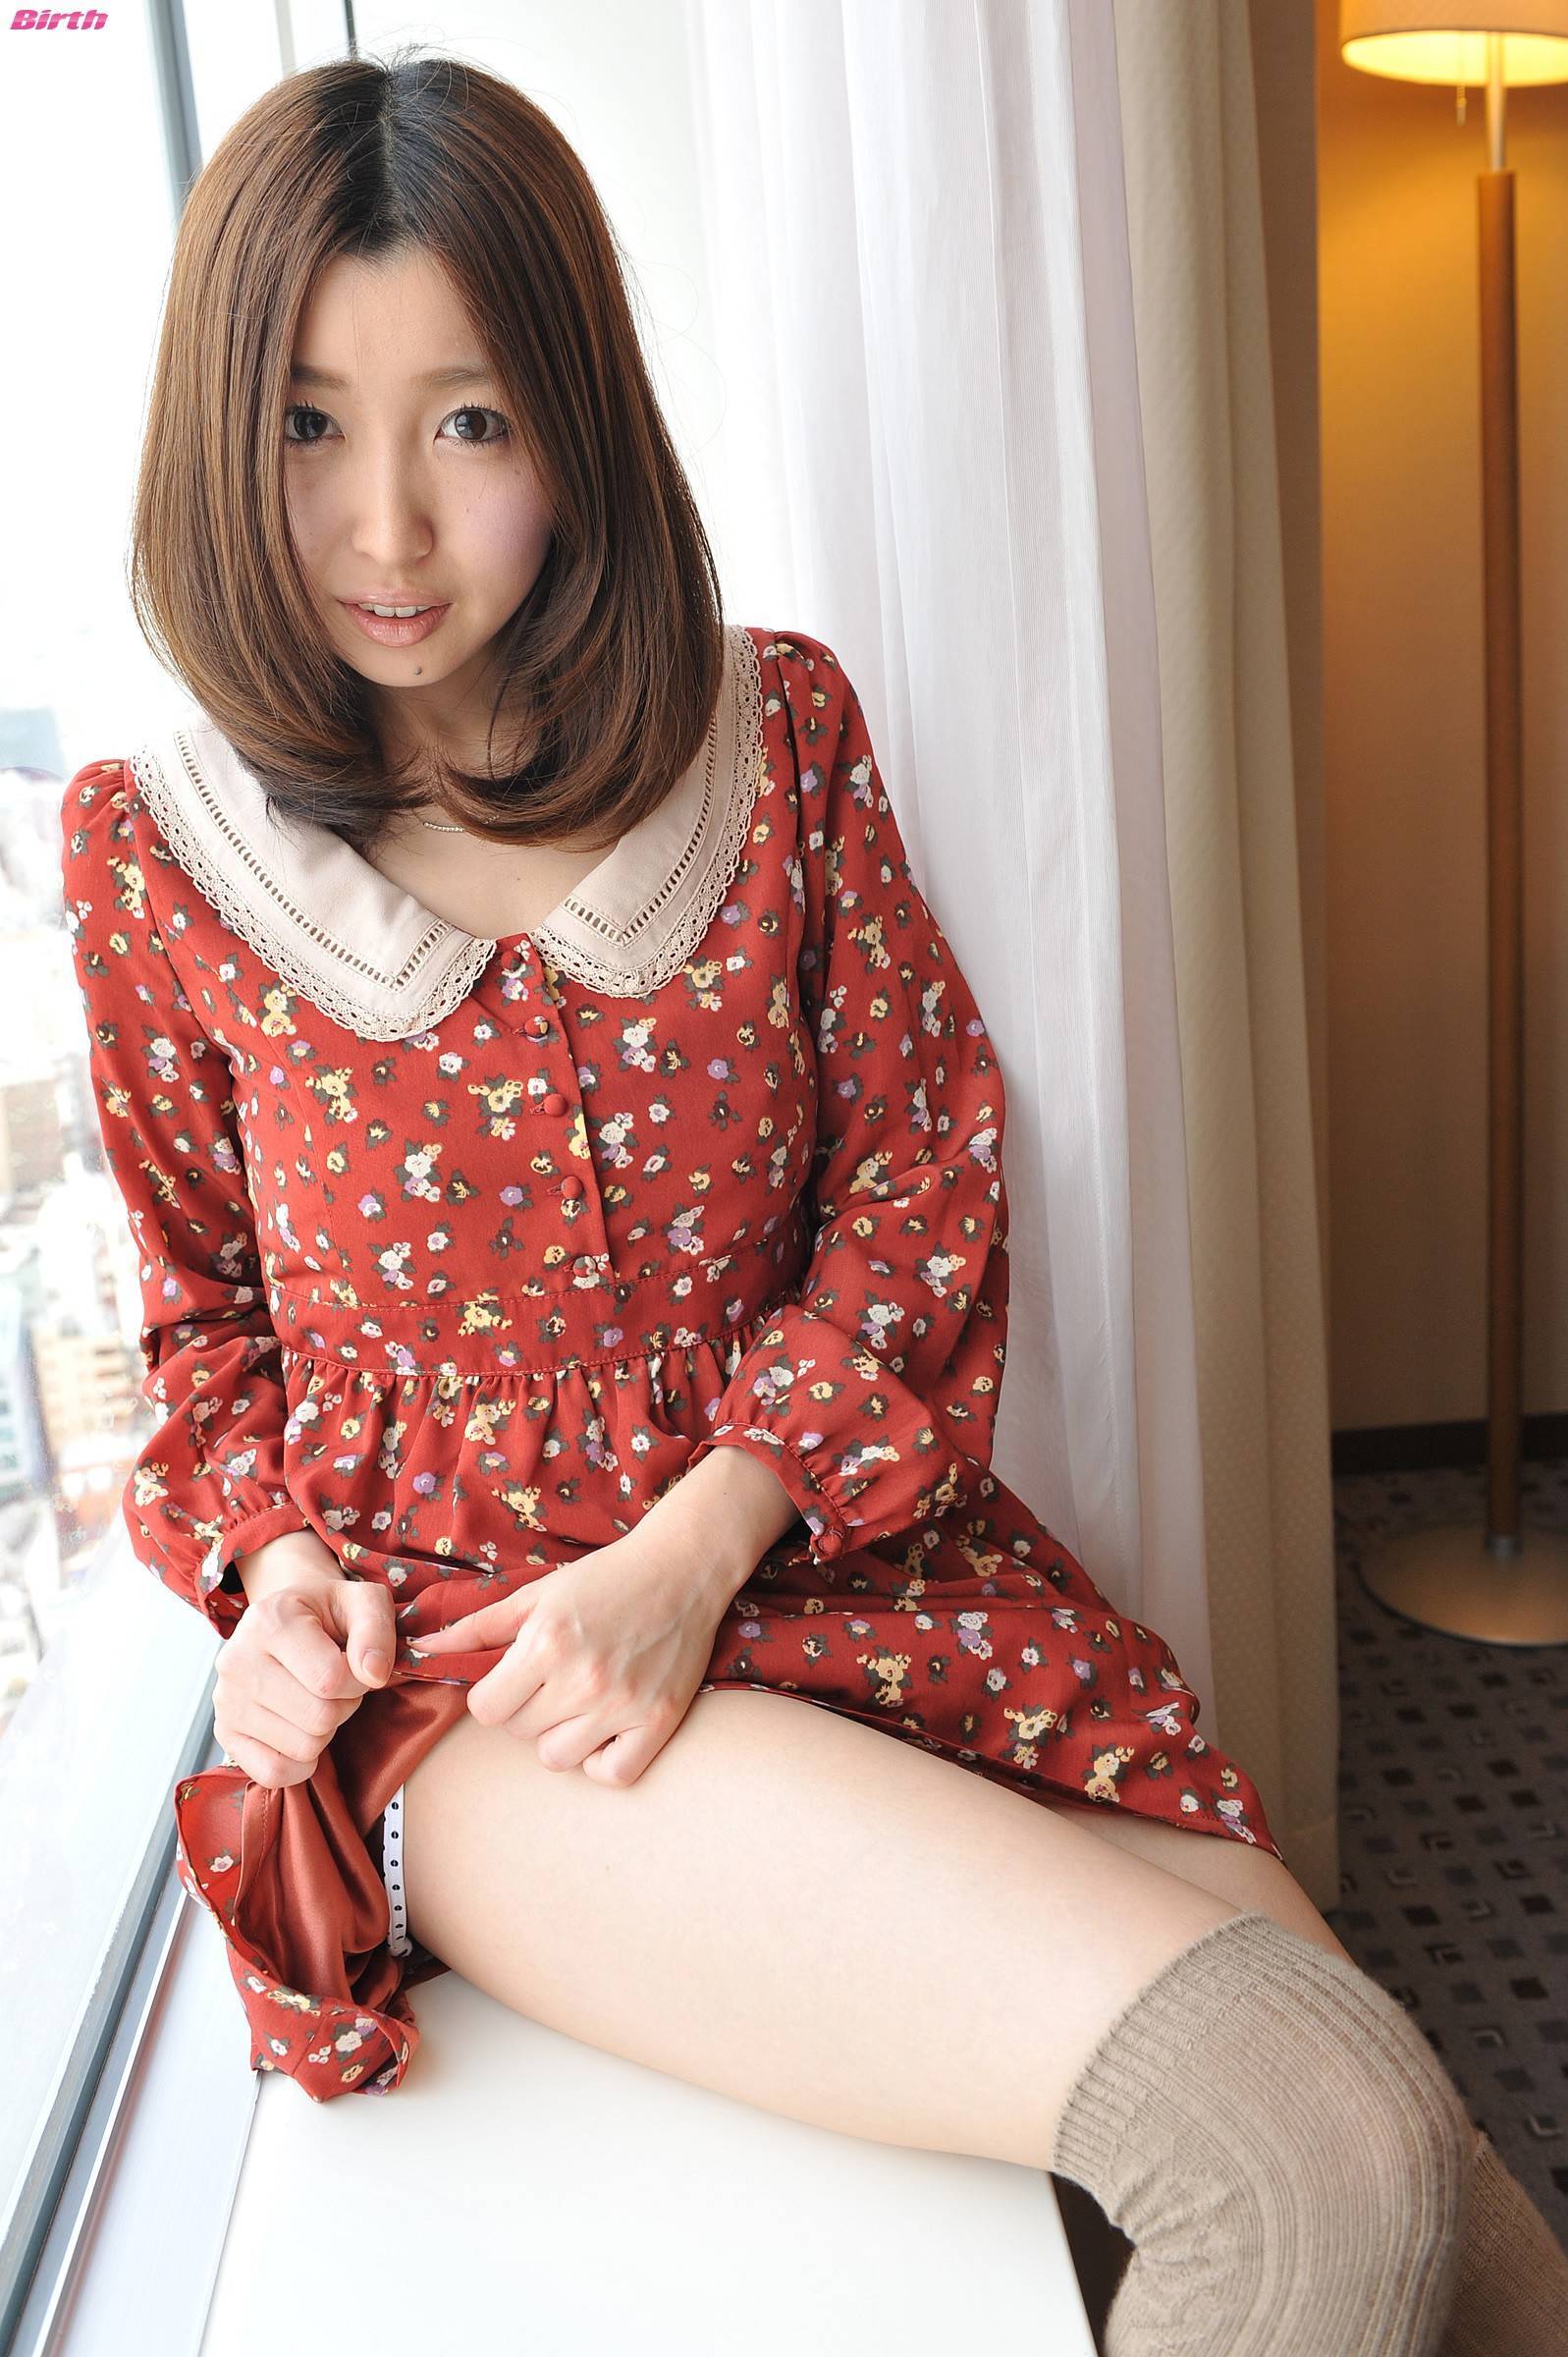 小松詩乃 [BWH] BWH0214P Komatsu Shino 日本超级性感美女